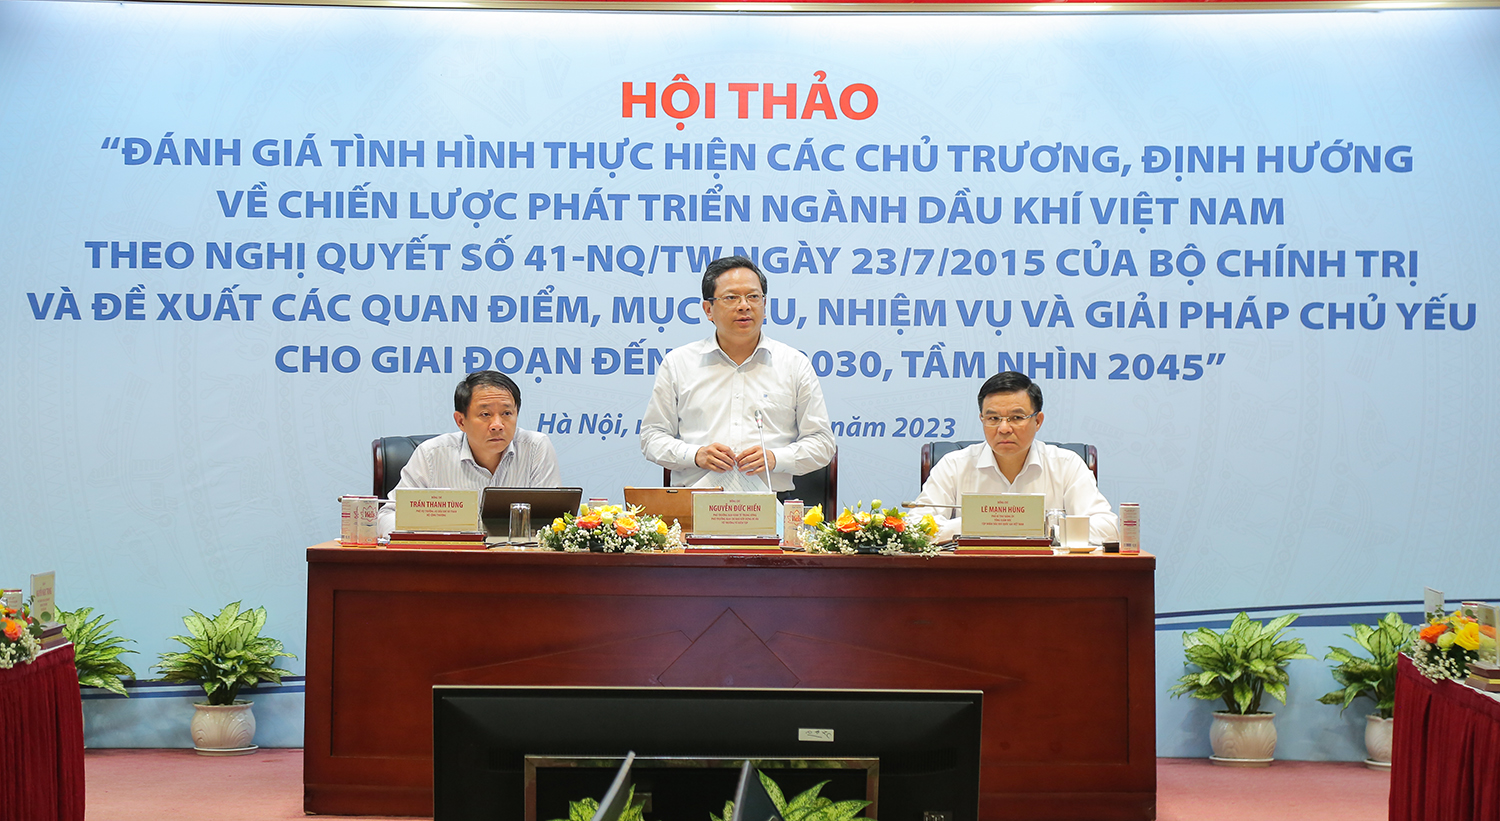 Petrovietnam phối hợp tổ chức Hội thảo định hướng về chiến lược phát triển ngành dầu khí Việt Nam - Ảnh 2.